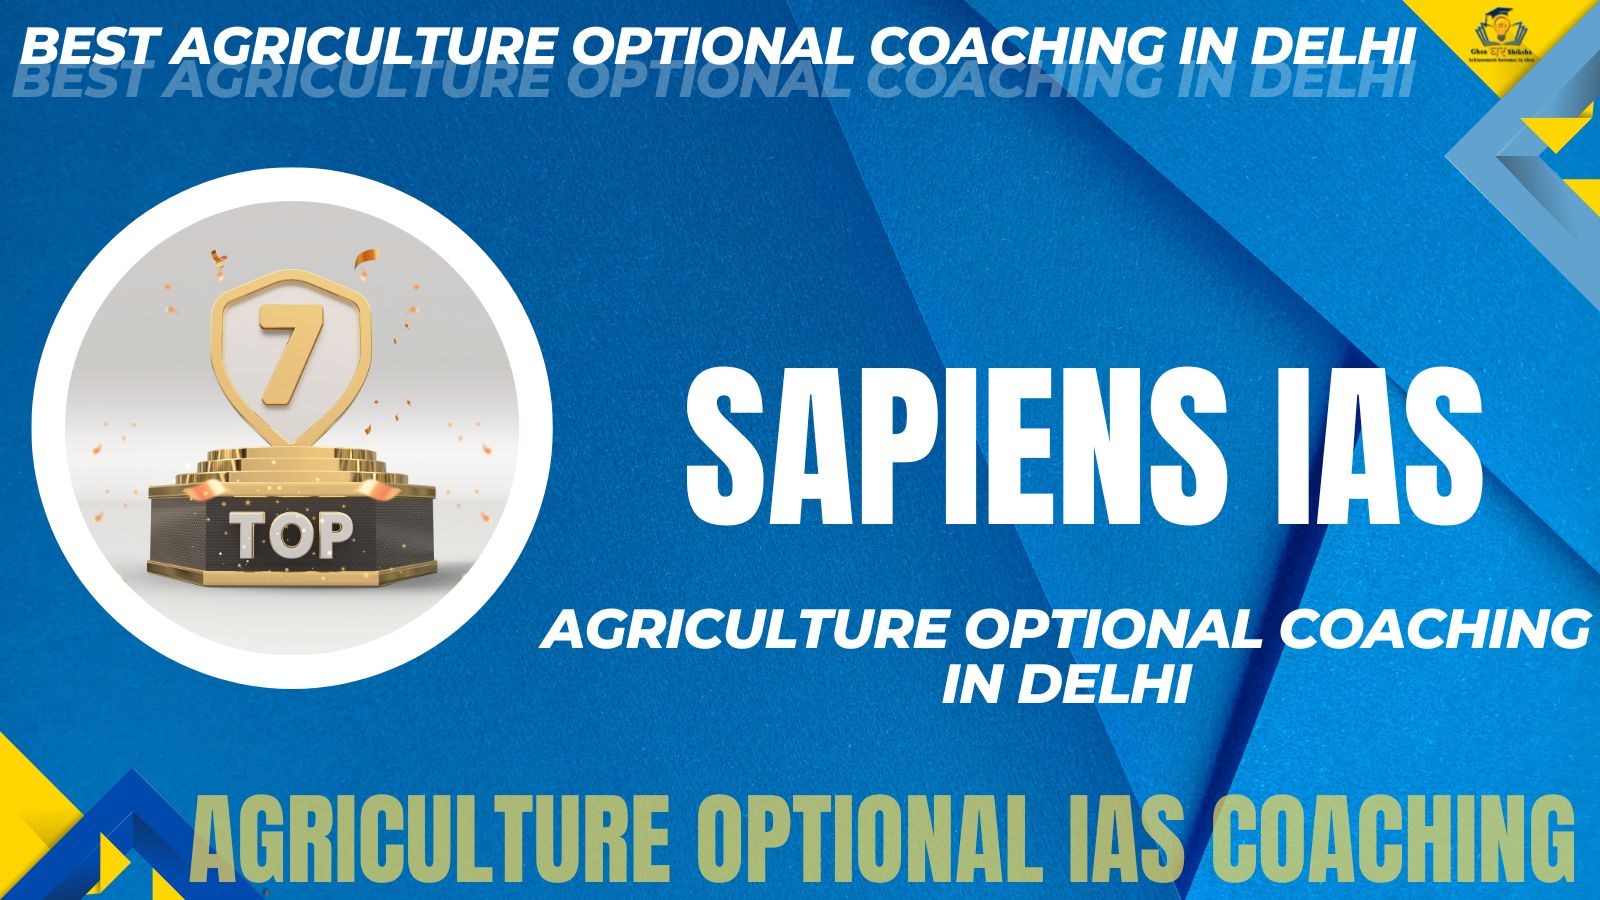 Agriculture Optional Coaching Institute of Delhi